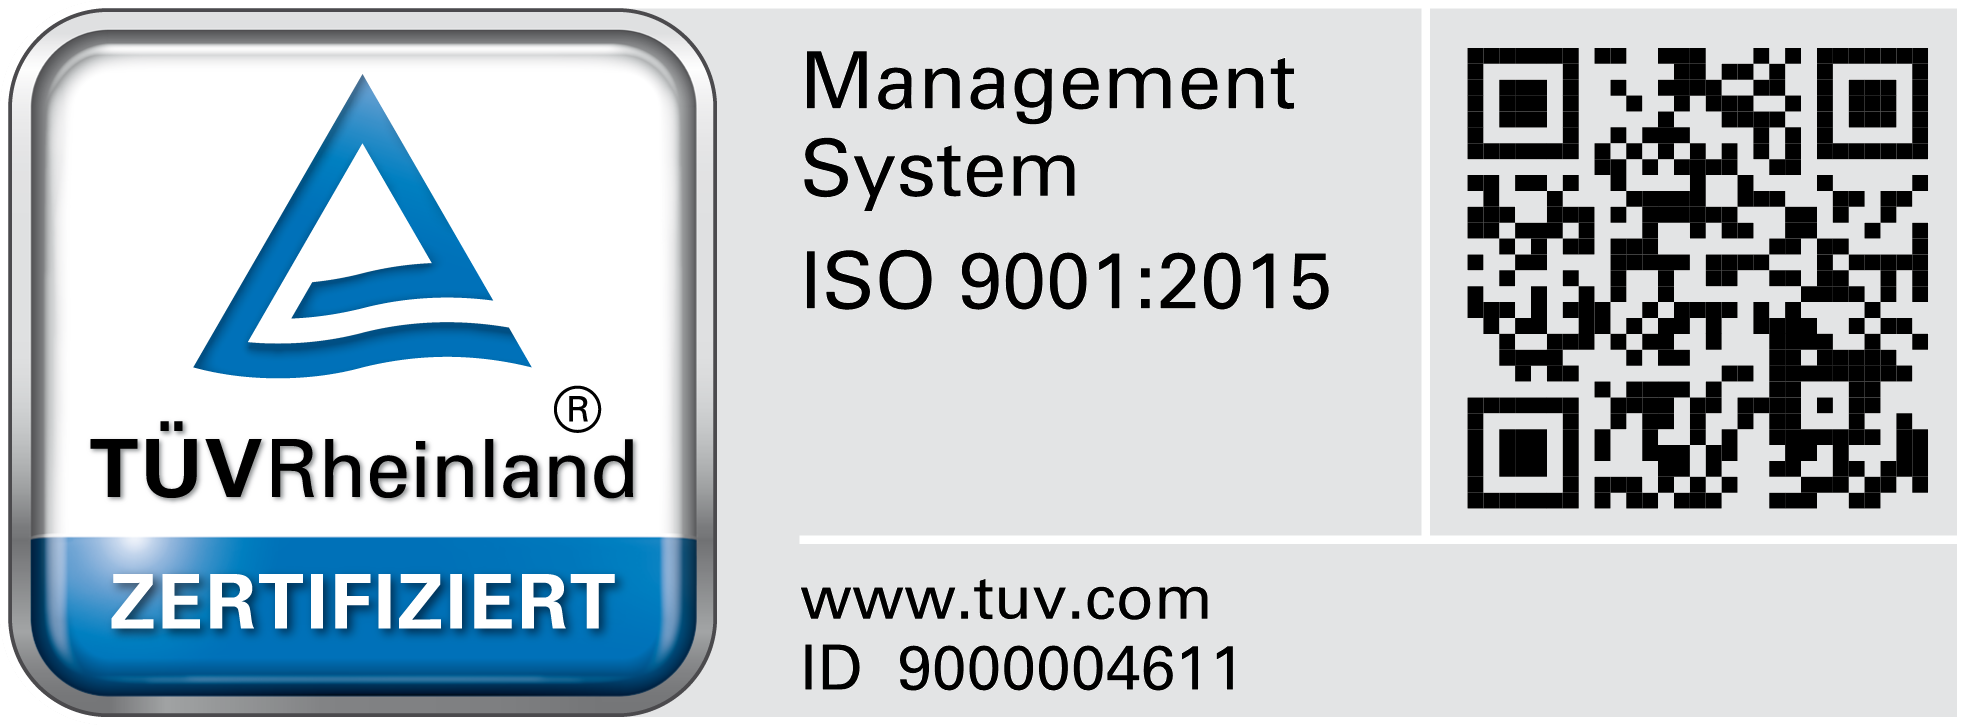 Wir sind gemäß ISO 9001 zertifiziert